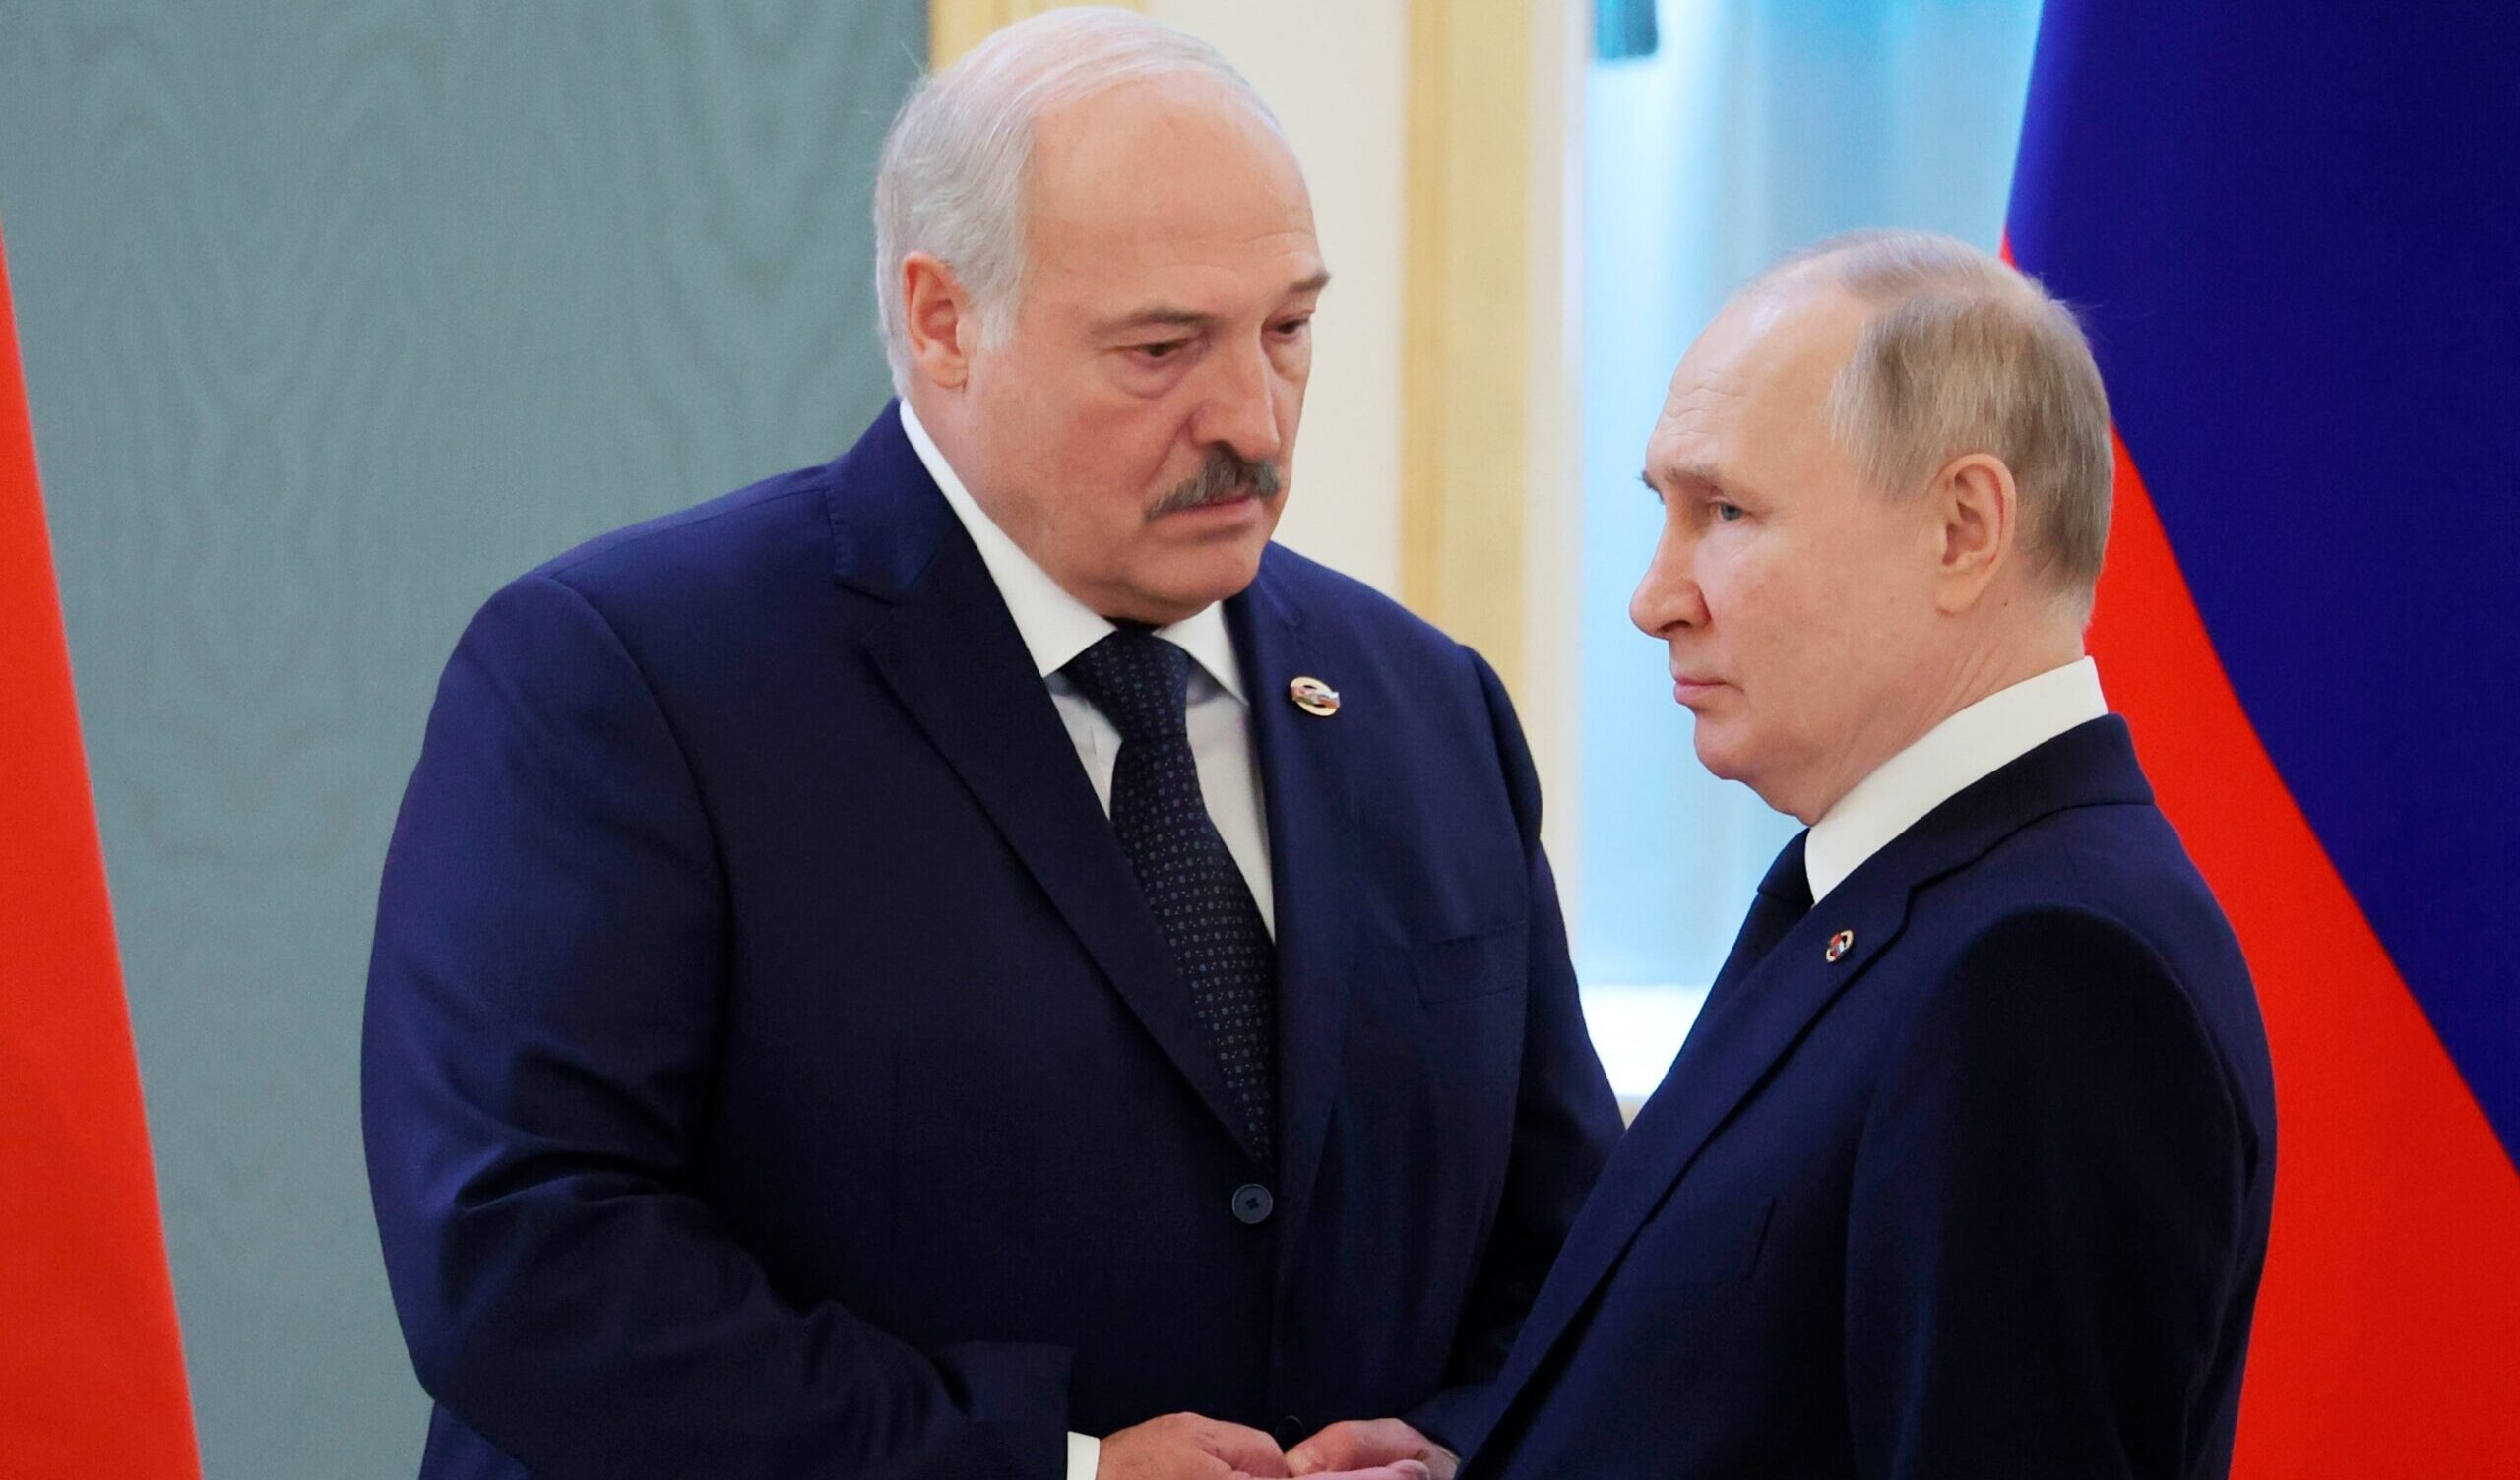 La Bielorussia terrà esercitazioni nucleari tattiche insieme alla Russia